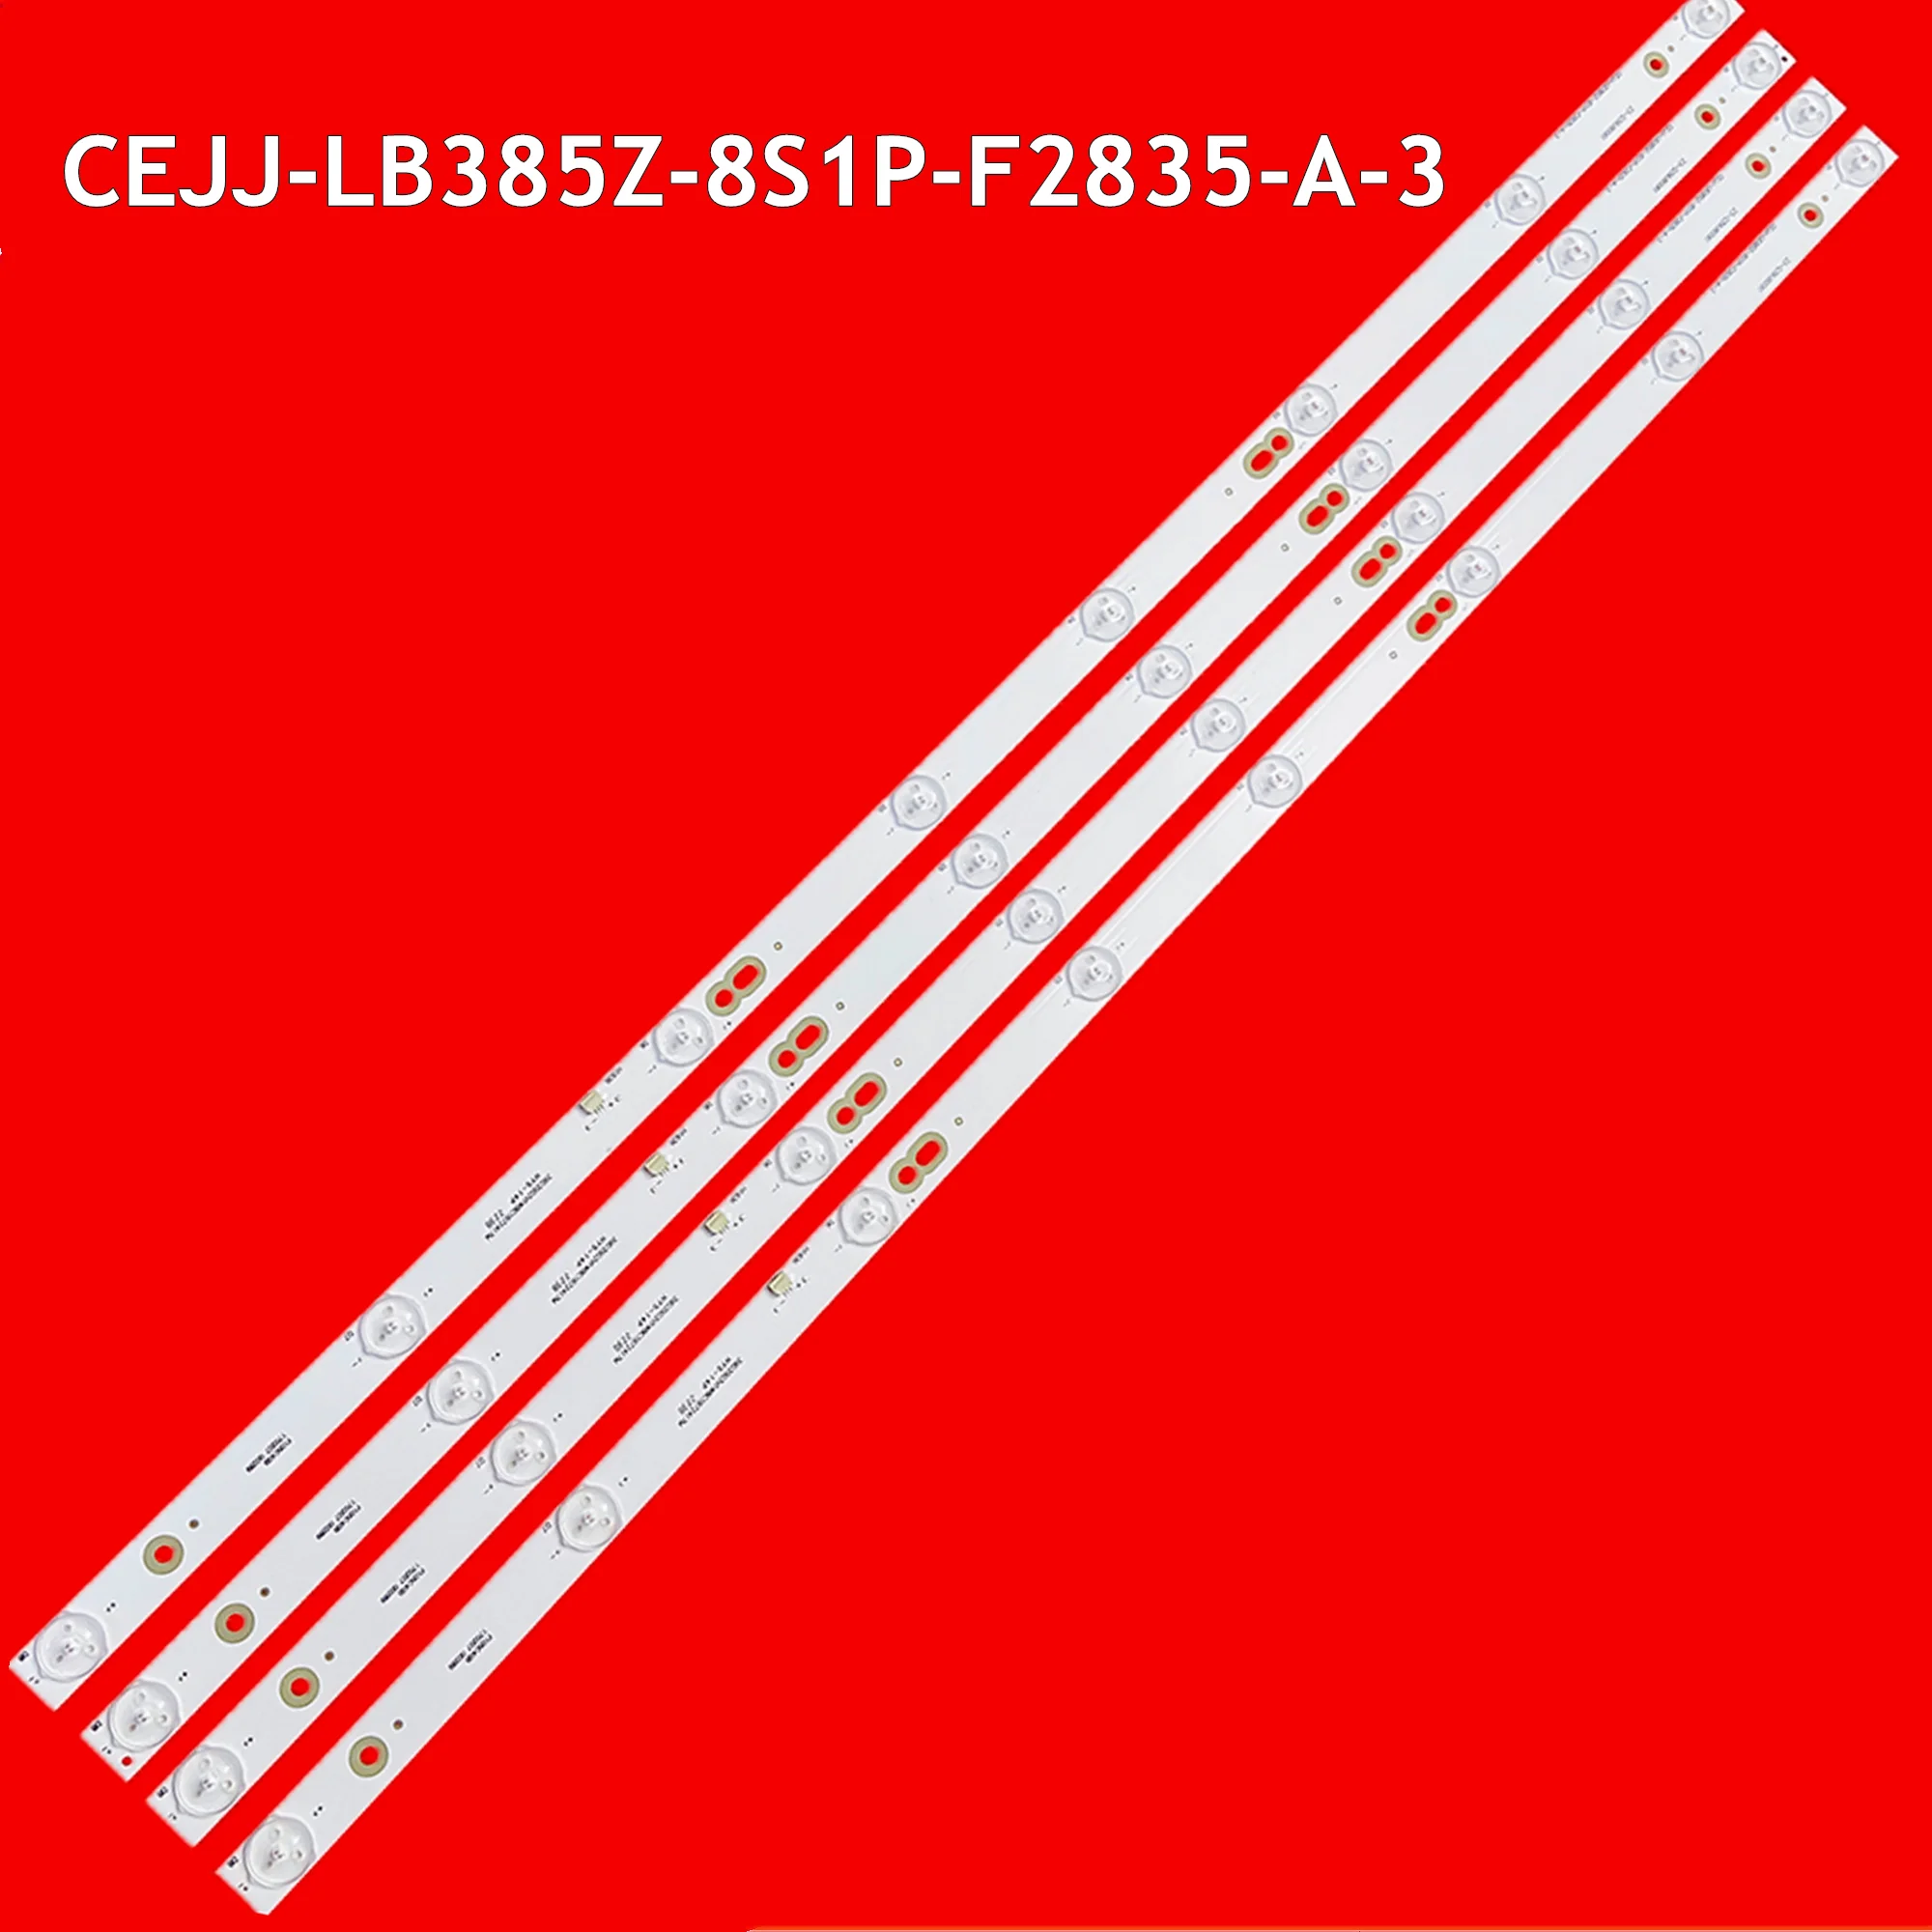 CEJJ-LB385Z-8S1P-F2835-A-3 LED TV Ʈ Ʈ, 23-Q39V80061